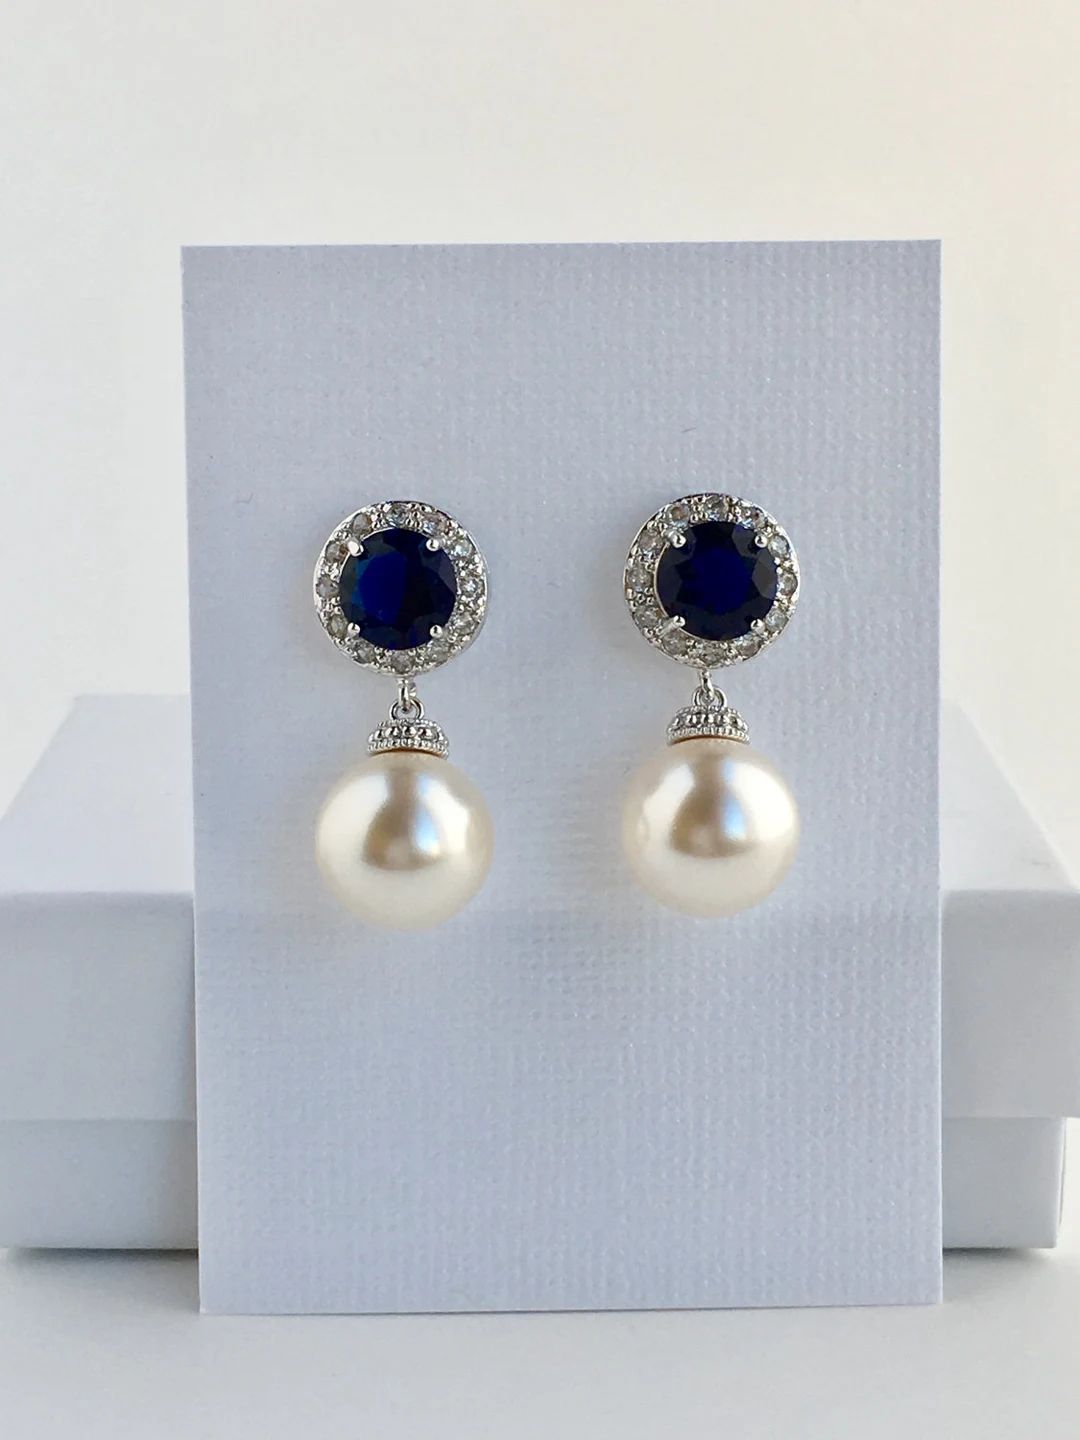 Sapphire Bridal Earrings Blue Crystal Halo Earrings Wedding Cubic Zirconia Earrings Blue Bridal E... | Etsy (US)